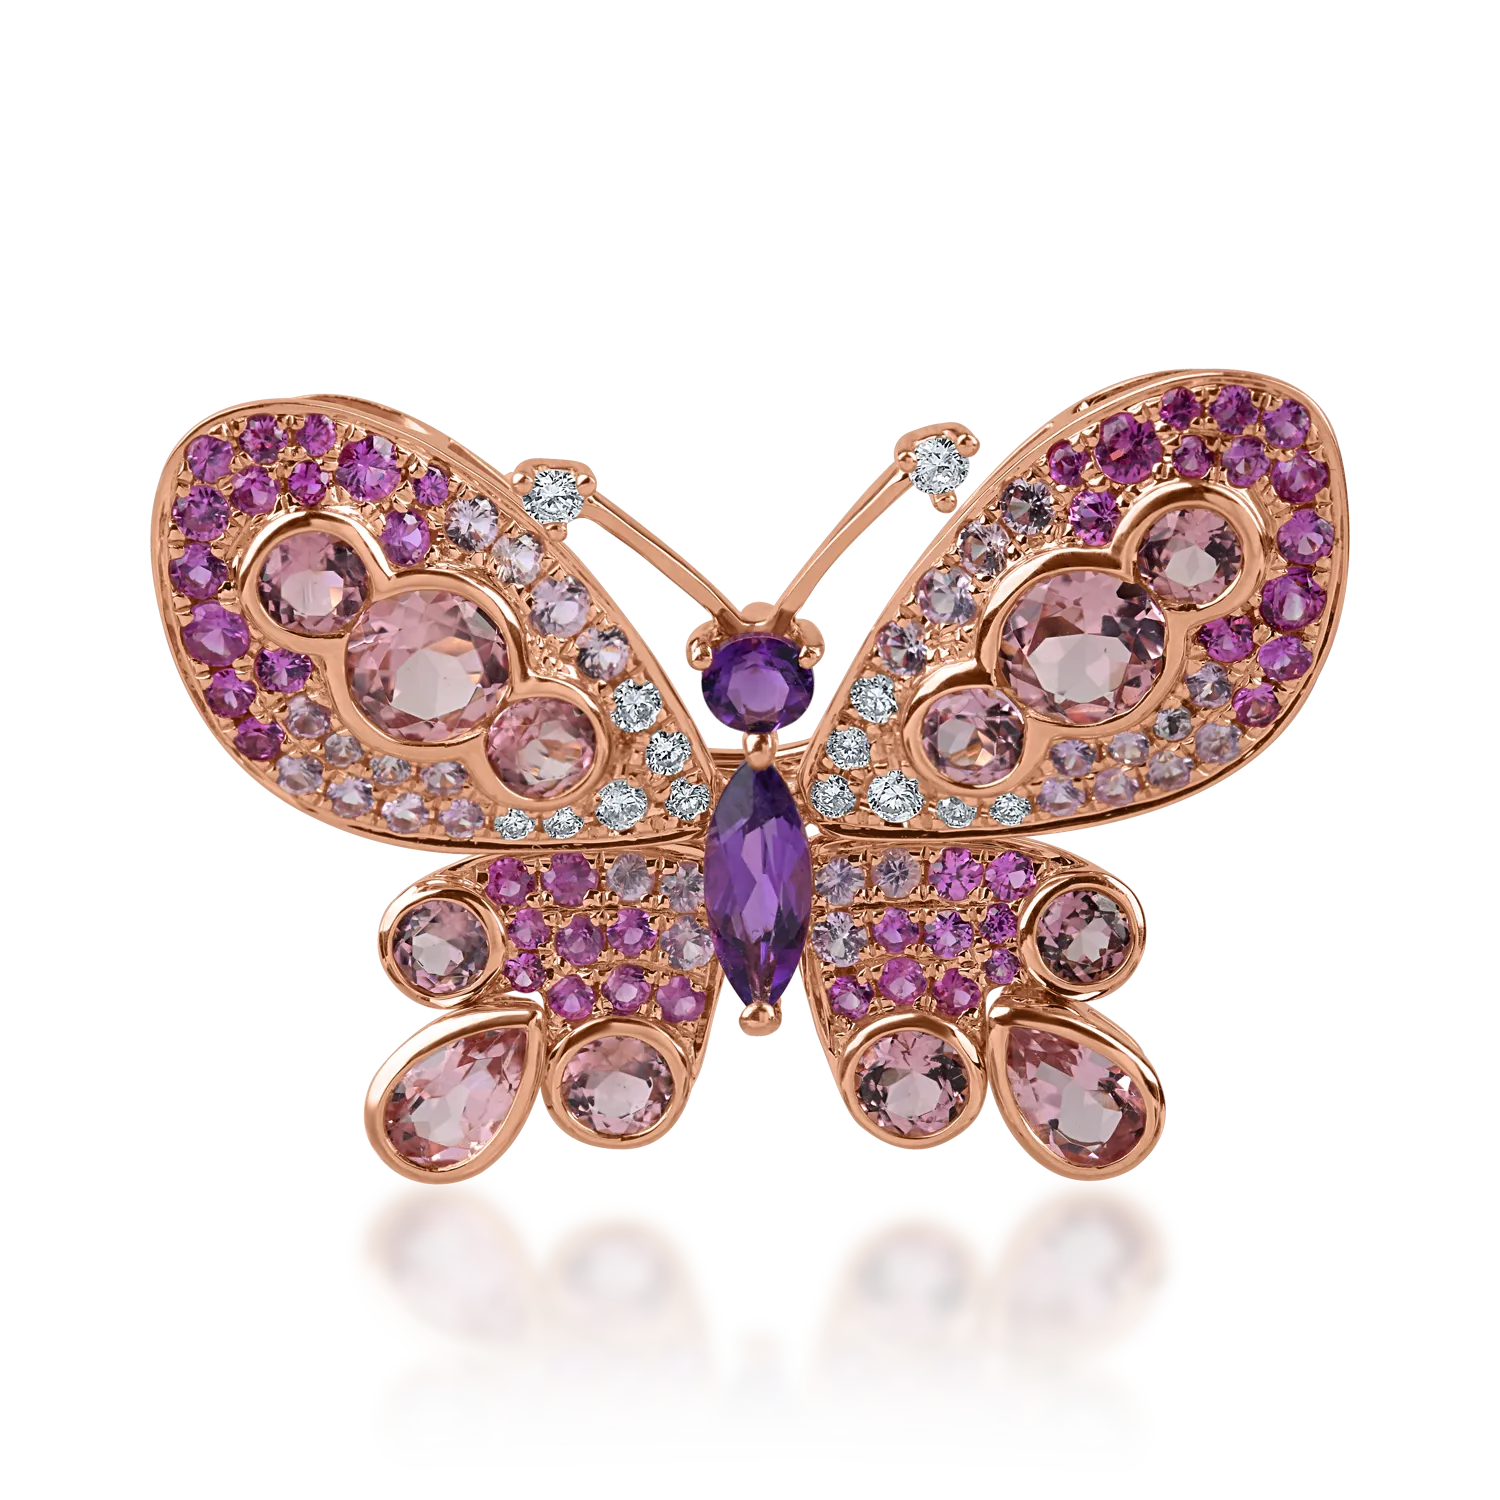 Rózsarany pillangós bross 4ct drágakövekkel és féldrágakövekkel